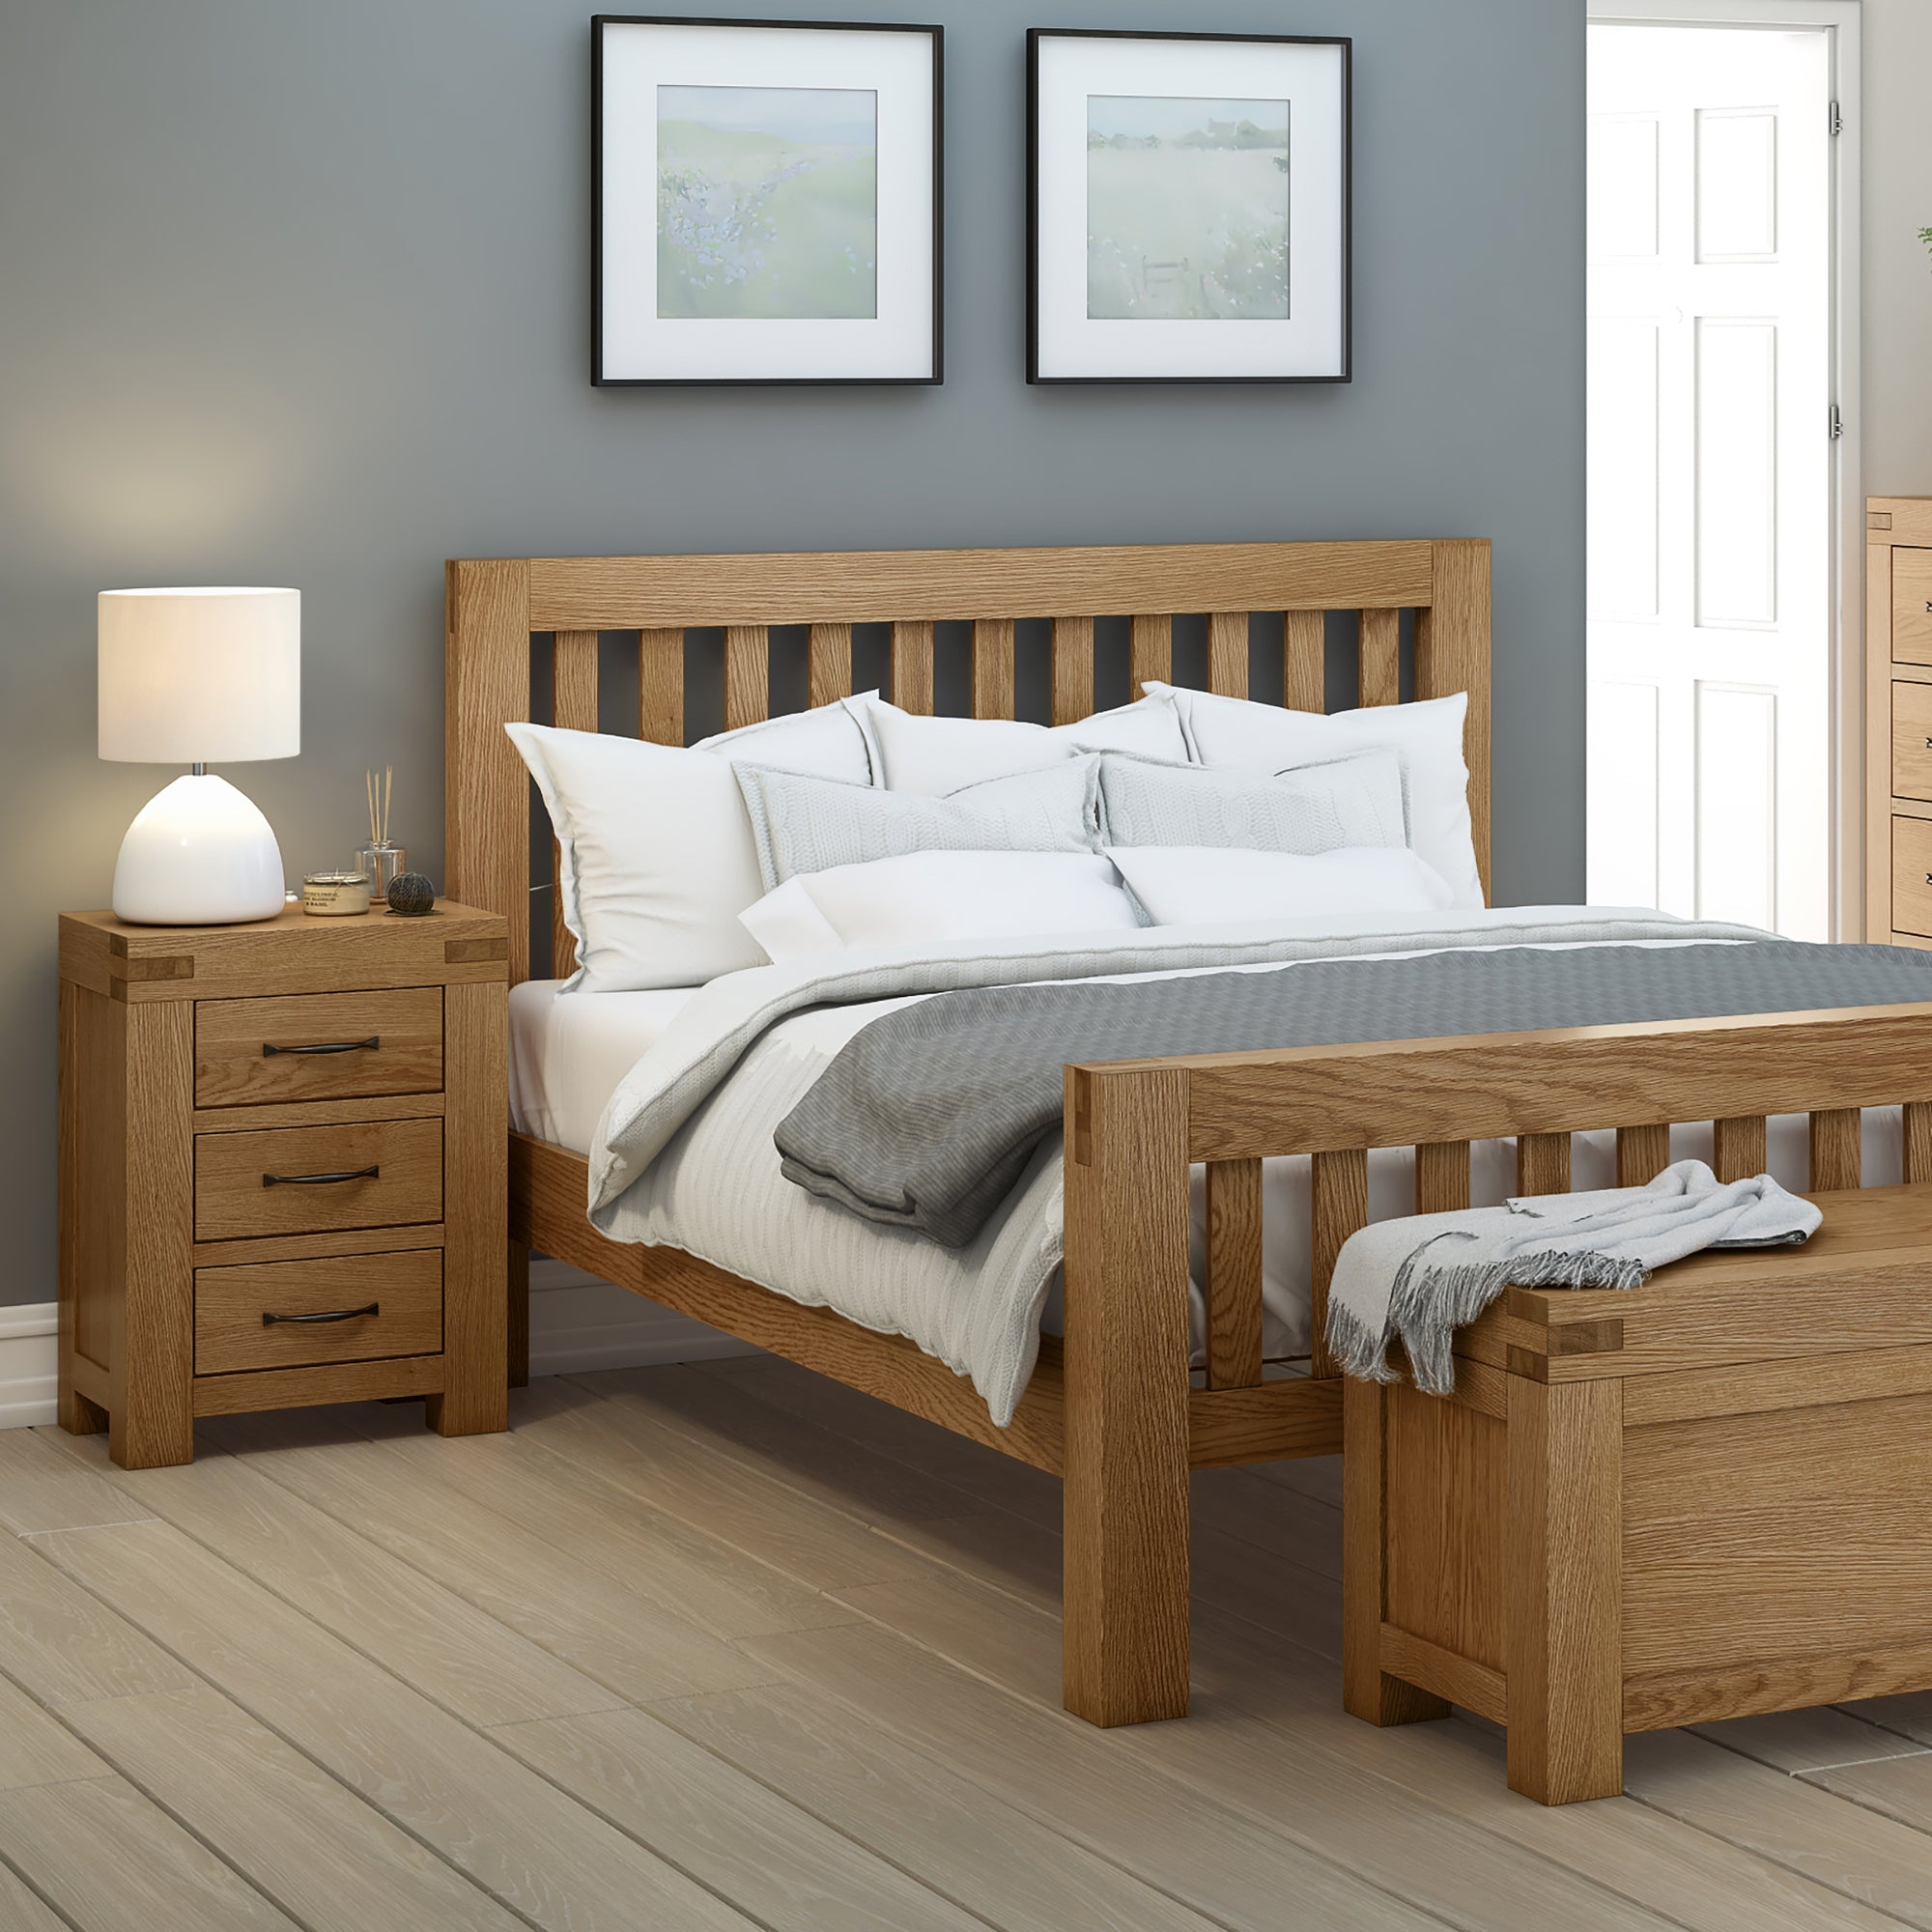 Abbey Grande Oak 4 6 Bed Frame Queen Size Solid Wood Waxed Oak Roseland Furniture